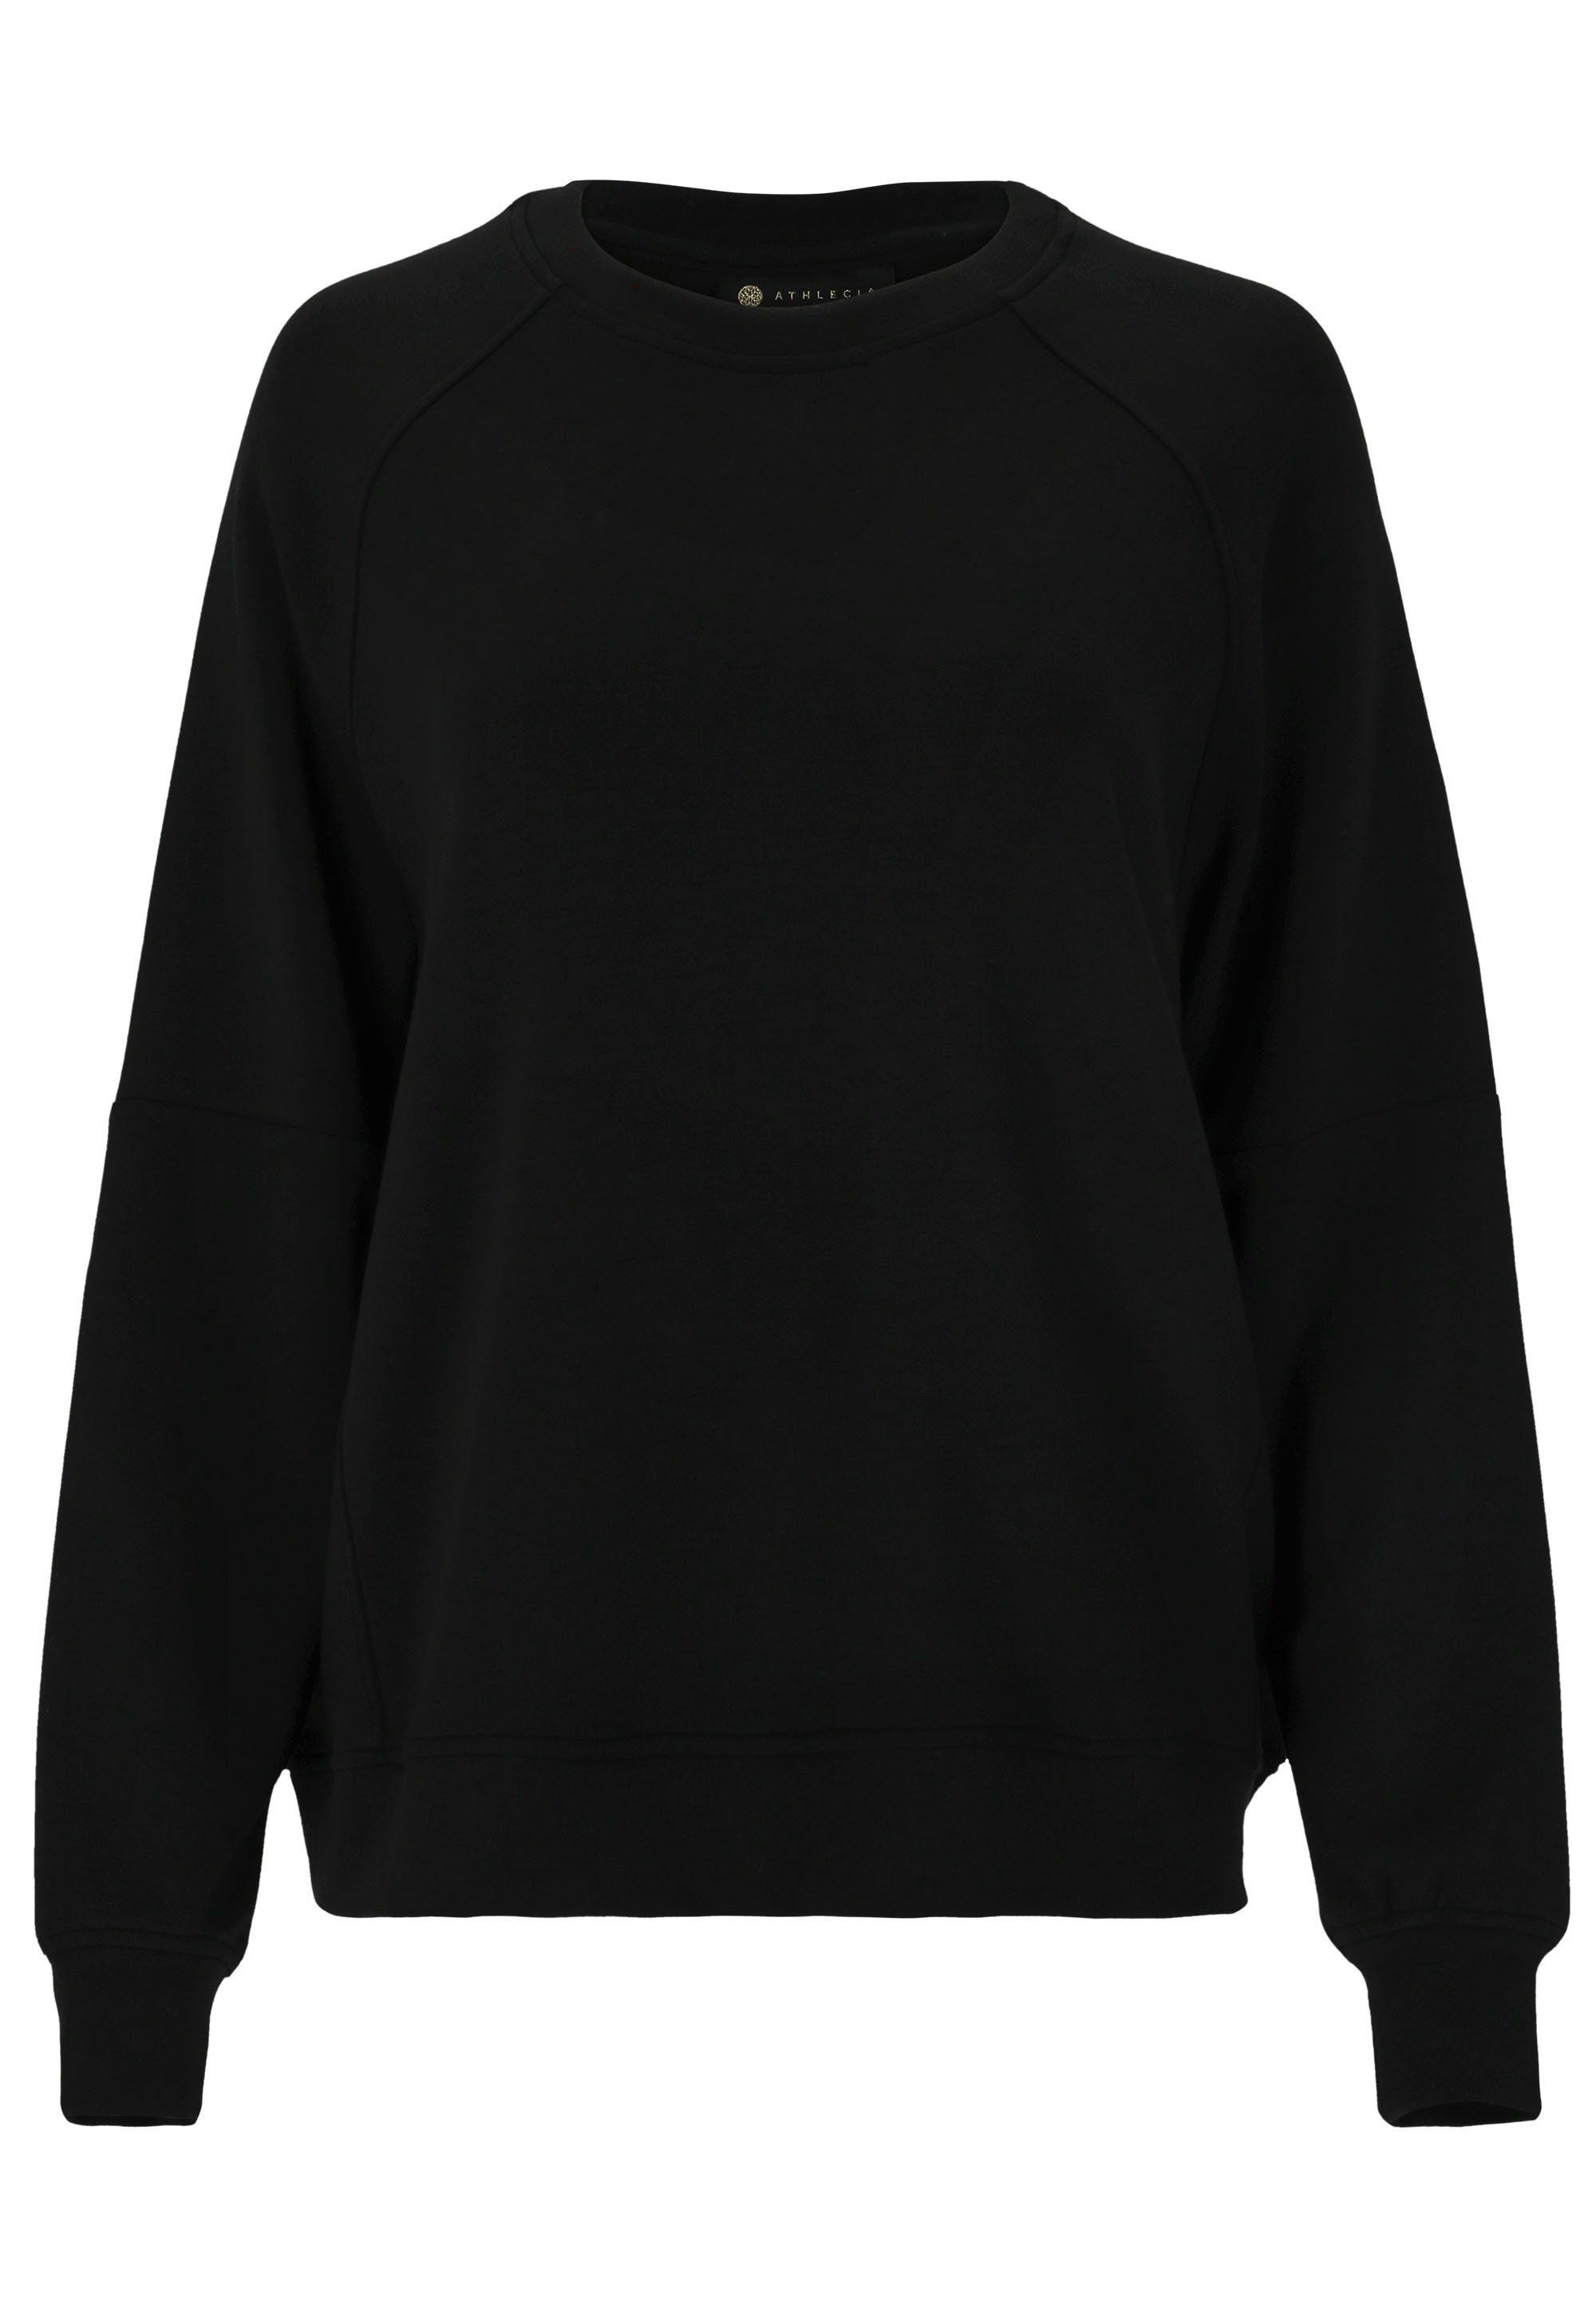 Jacey aus schwarz ATHLECIA Material weichem extra Sweatshirt